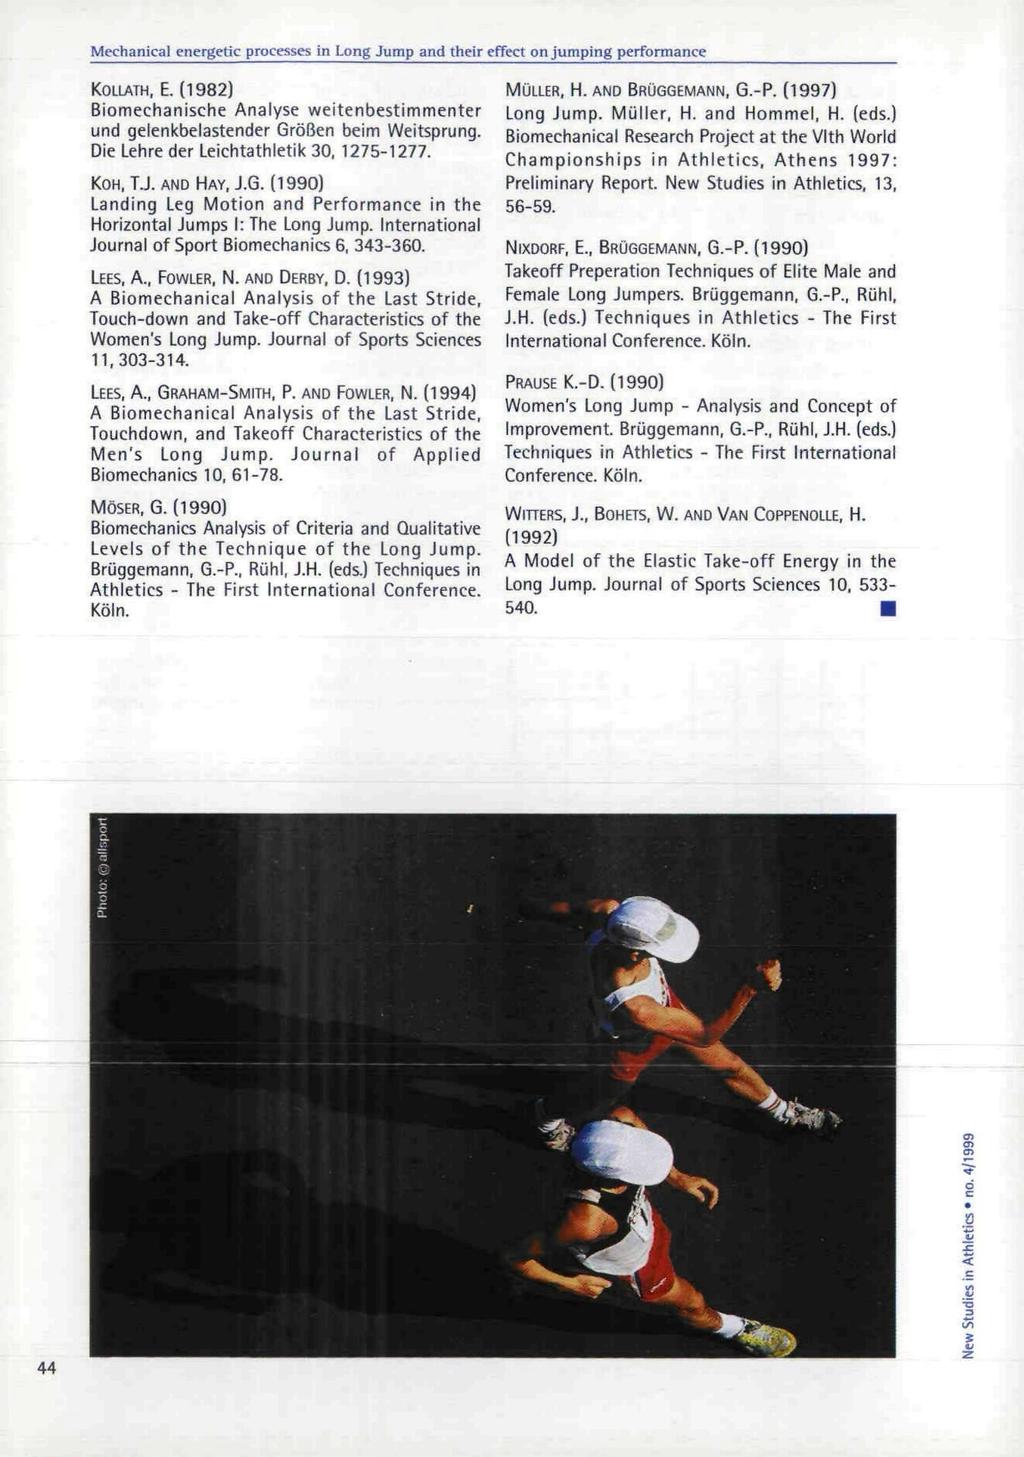 KOLLATH. E. (1982) Biomechanische Analyse weitenbestimmenter und gelenkbelastender Größen beim Weitsprung. Die Lehre der Leichtathletik 30. 1275-1277. KOH.TJ. AND HAY, J.G. (1990) Landing Leg Motion and Performance in the Horizontal Jumps I: The Long Jump.